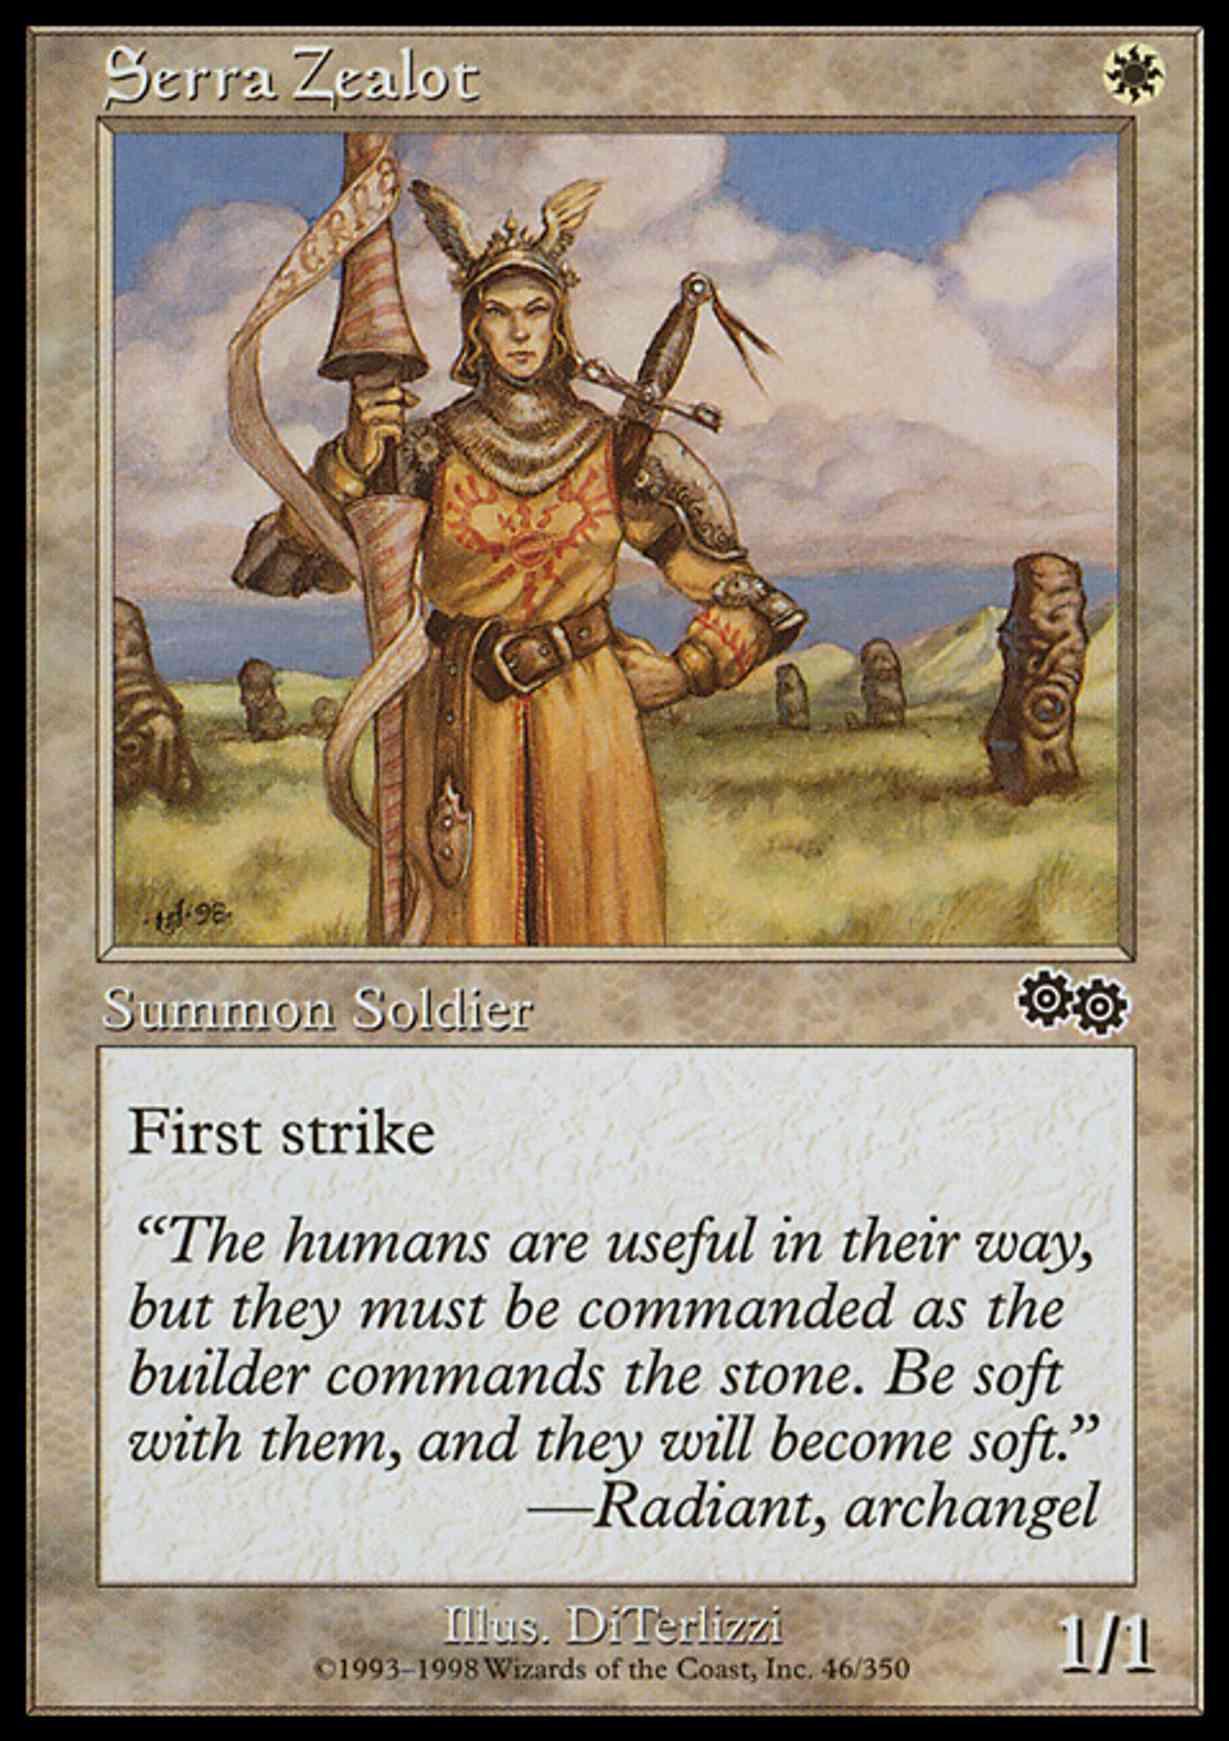 Serra Zealot magic card front